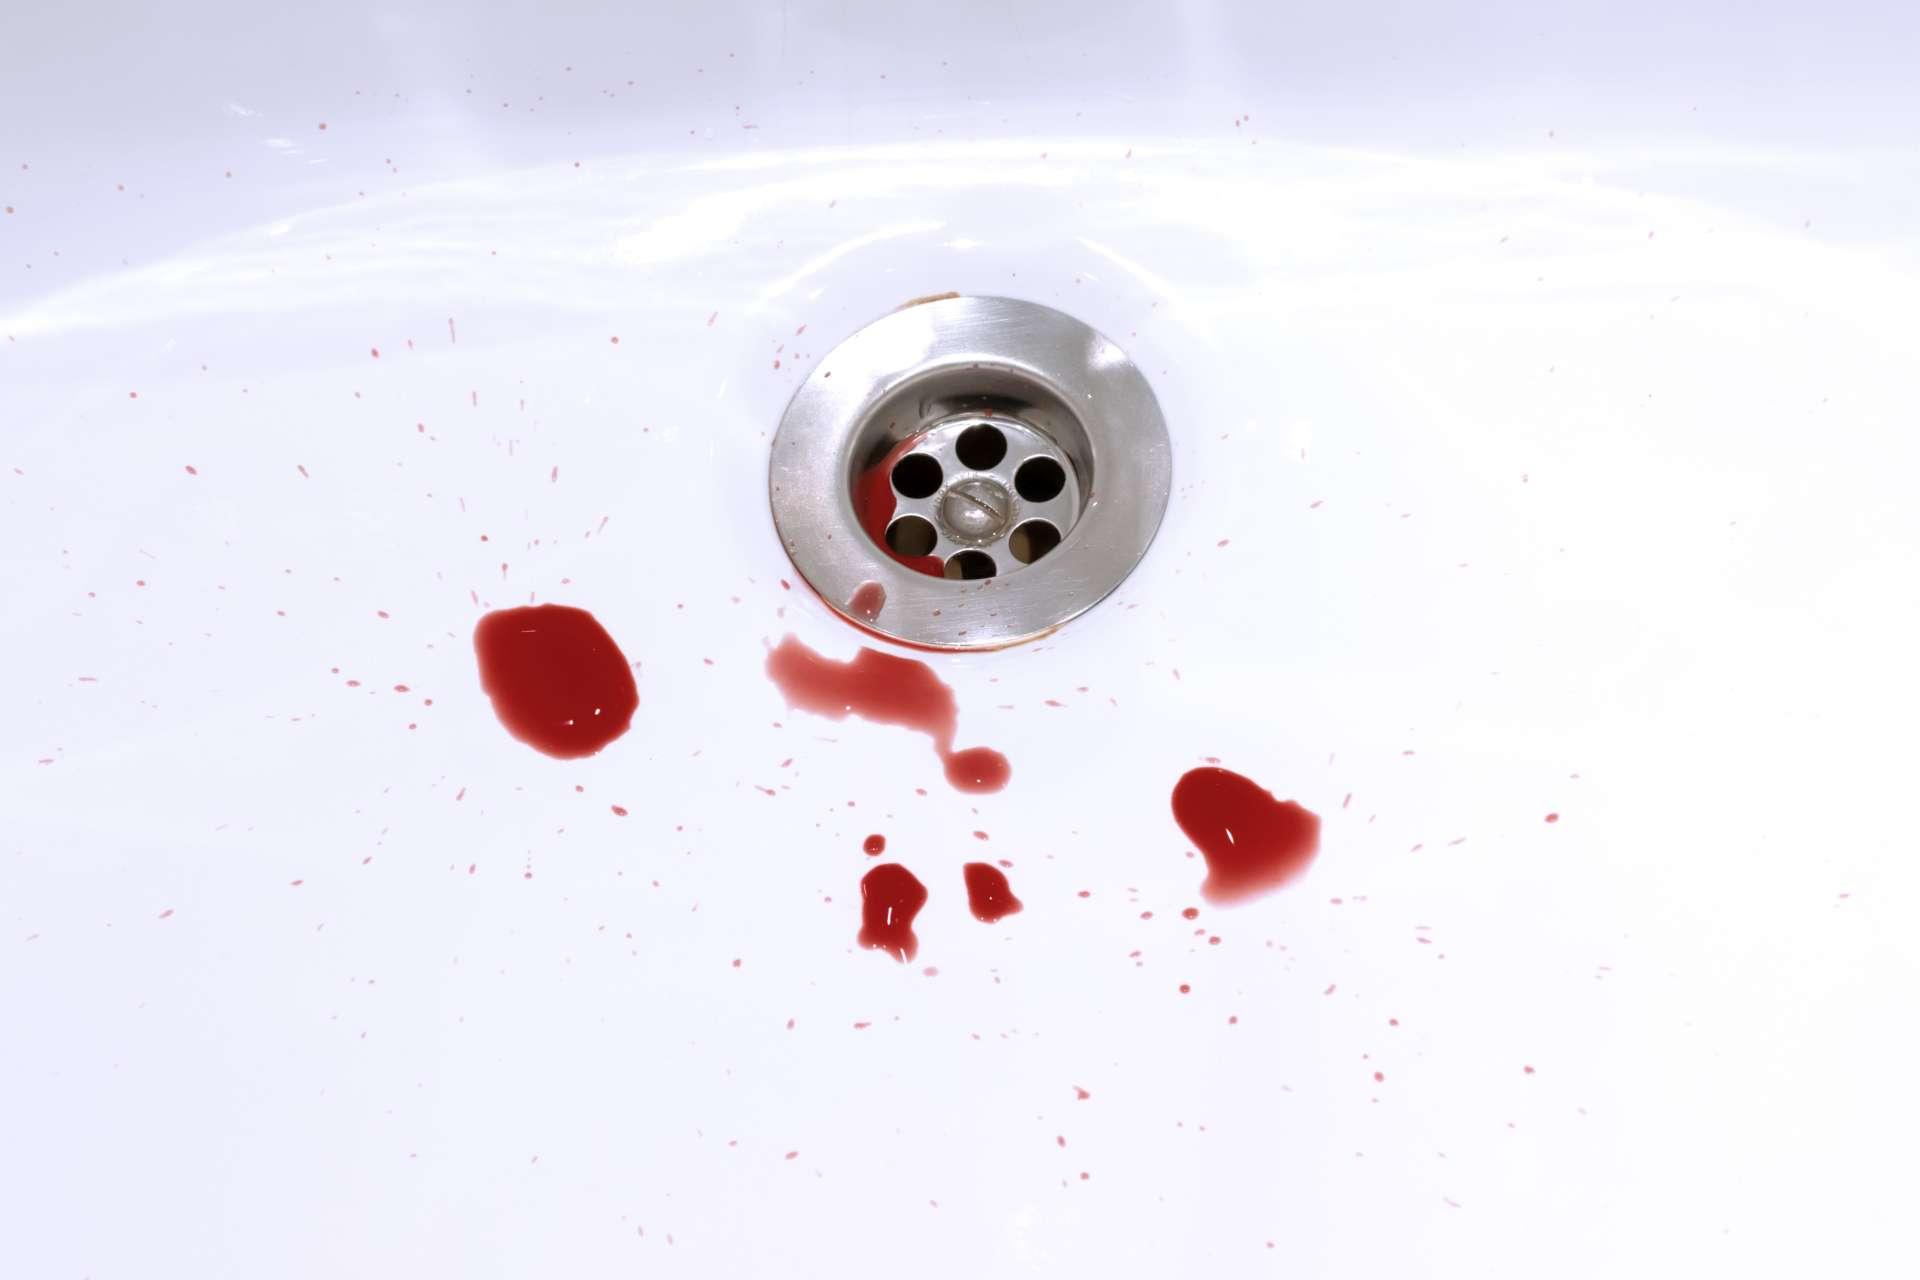 Blutflecken im Waschbecken, Blutungs-, Kriminal- und Selbstmordkonzept.